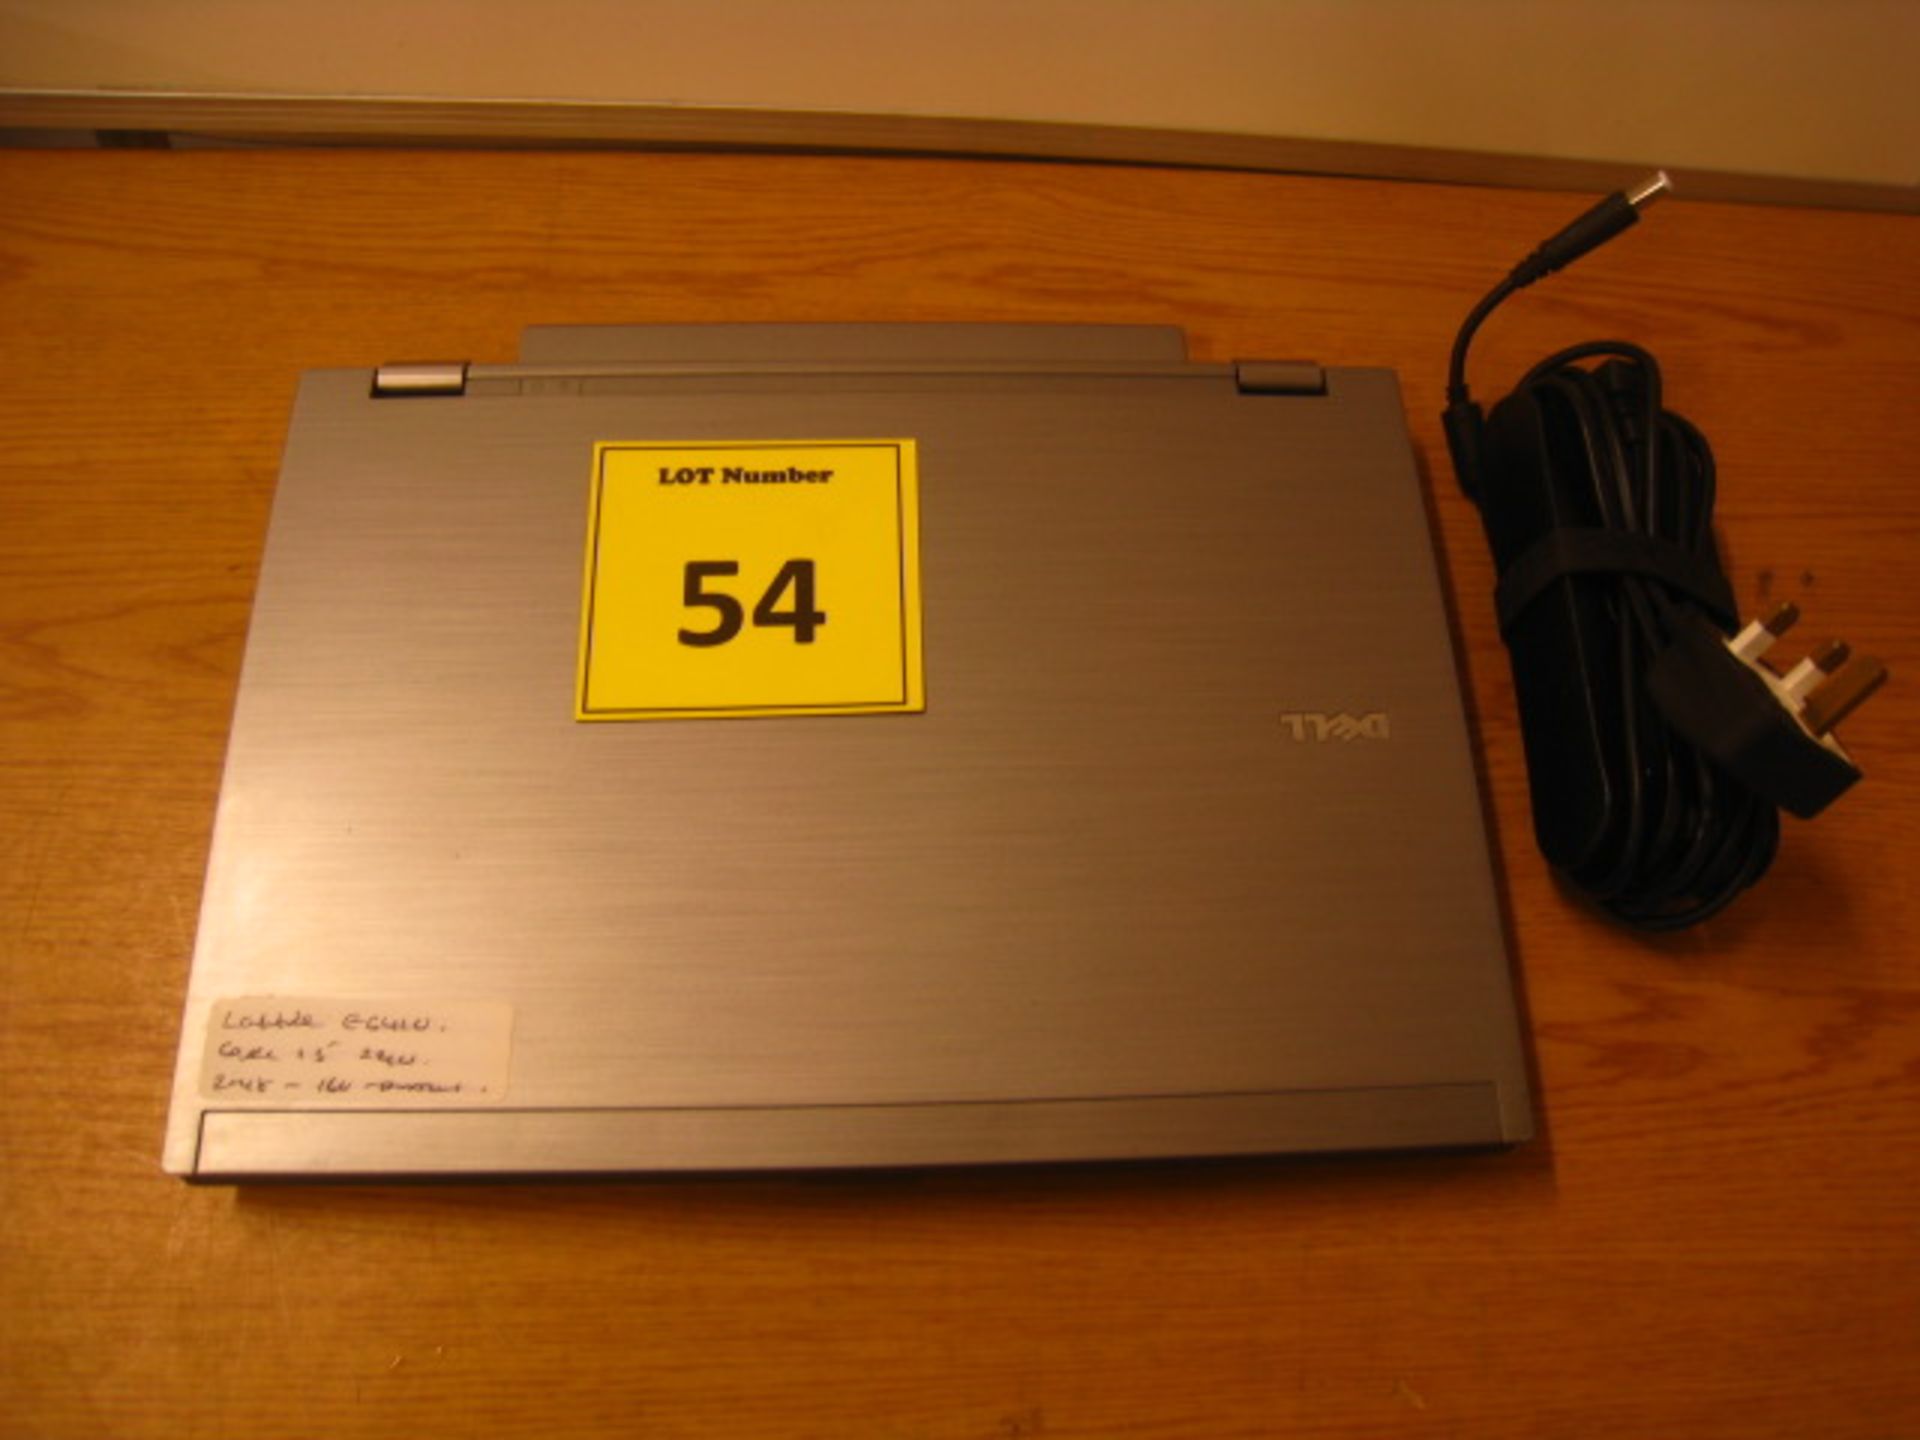 DELL LATITUDE E6410 LAPTOP. CORE i5 2.4GHZ PROCESSOR, 4GB RAM, 160GB HDD, DVDRW WITH PSU. WINDOWS - Image 2 of 2